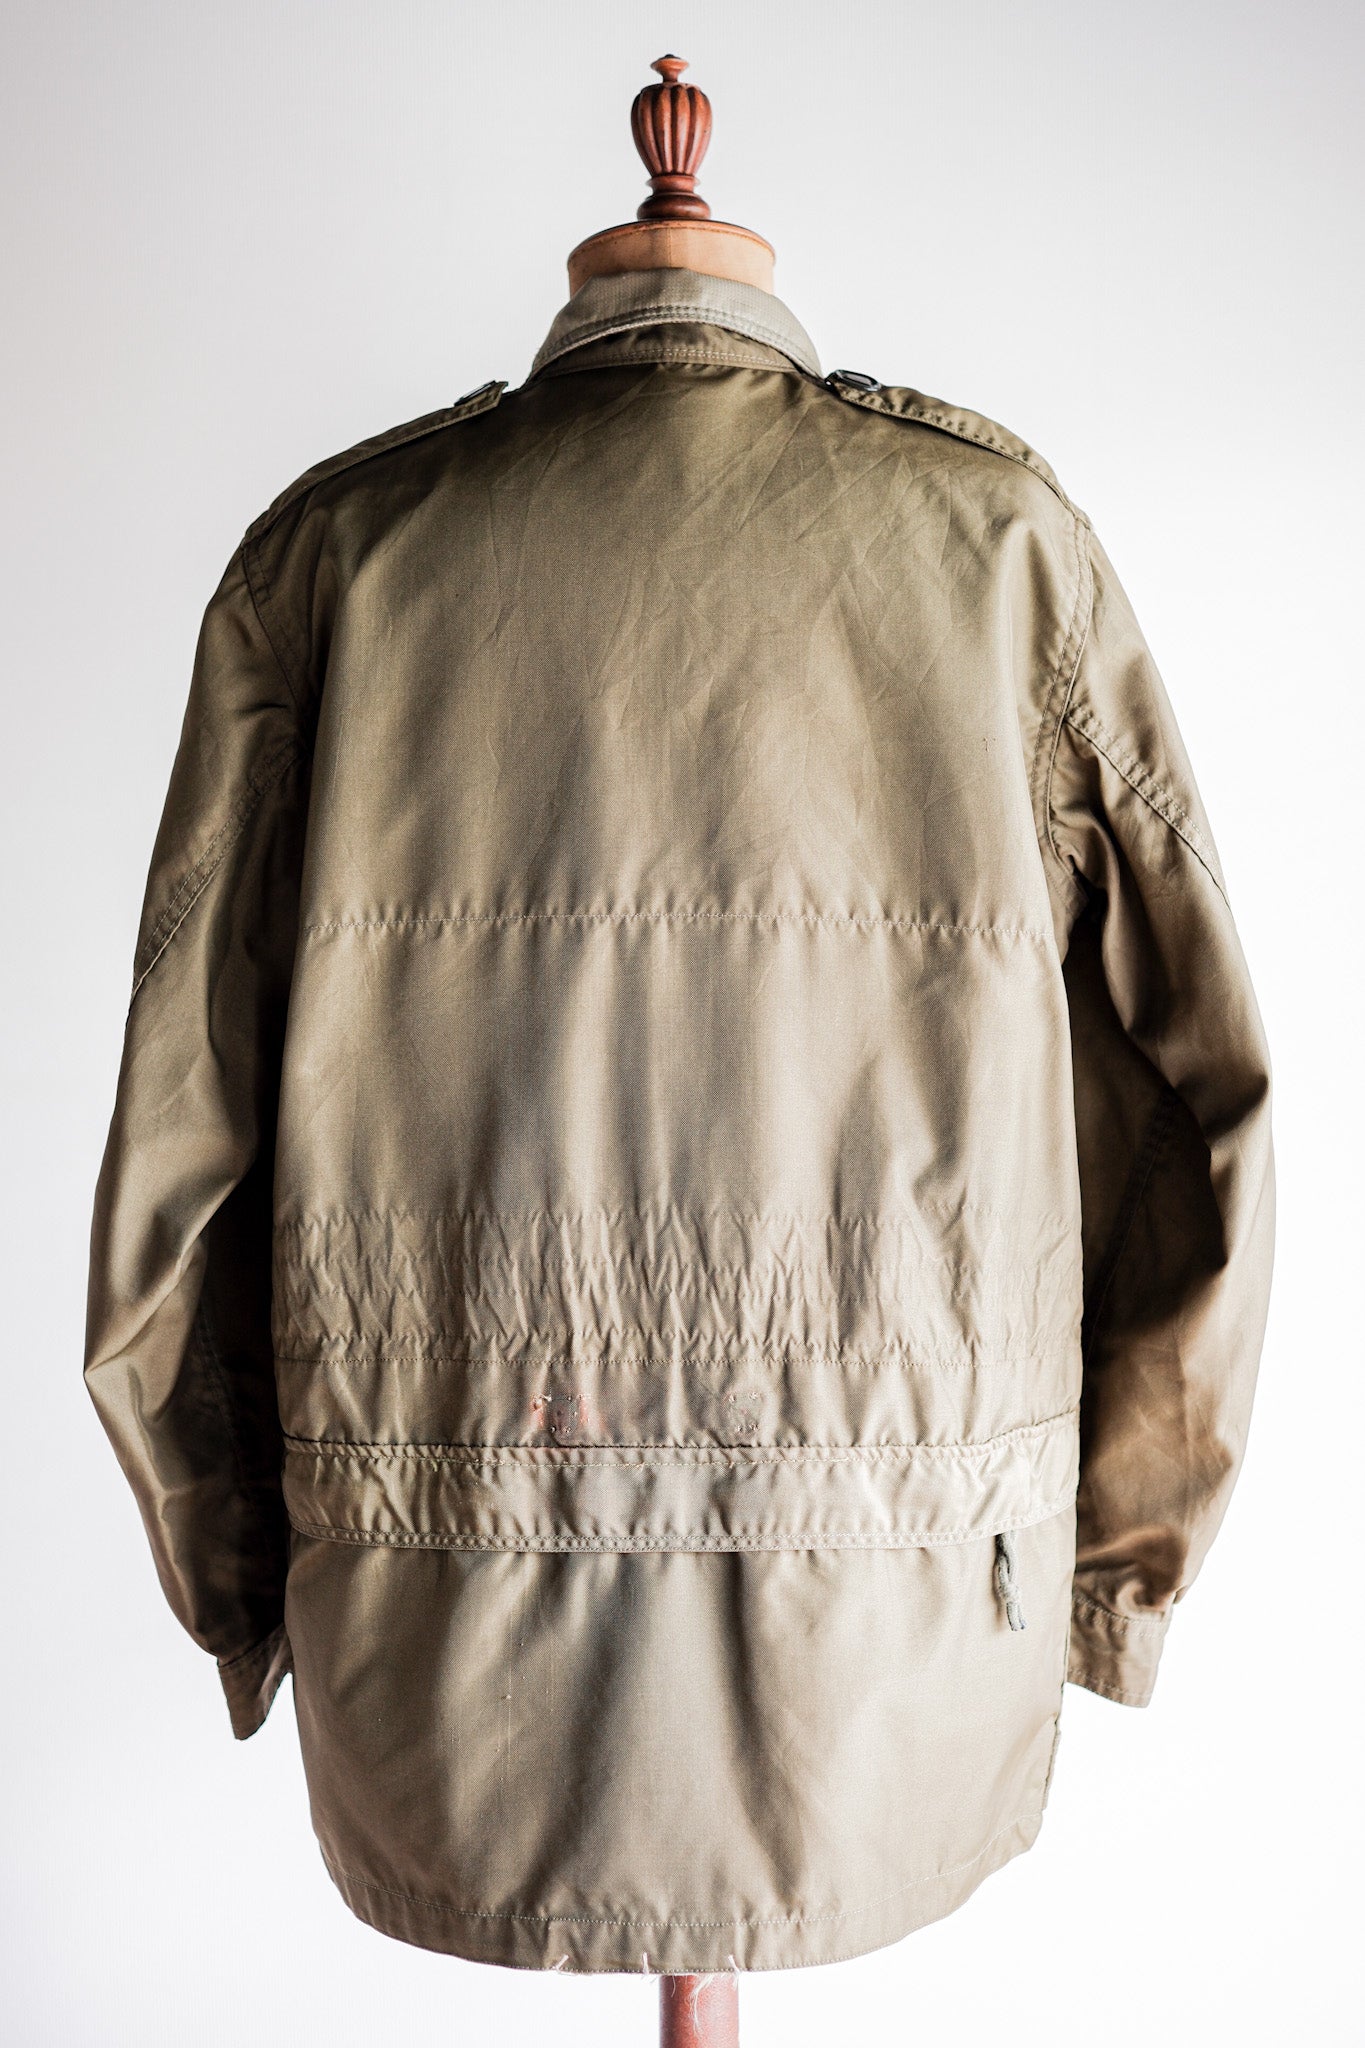 [~ 60's] Veste paratrooper de l'Air Force canadienne royale